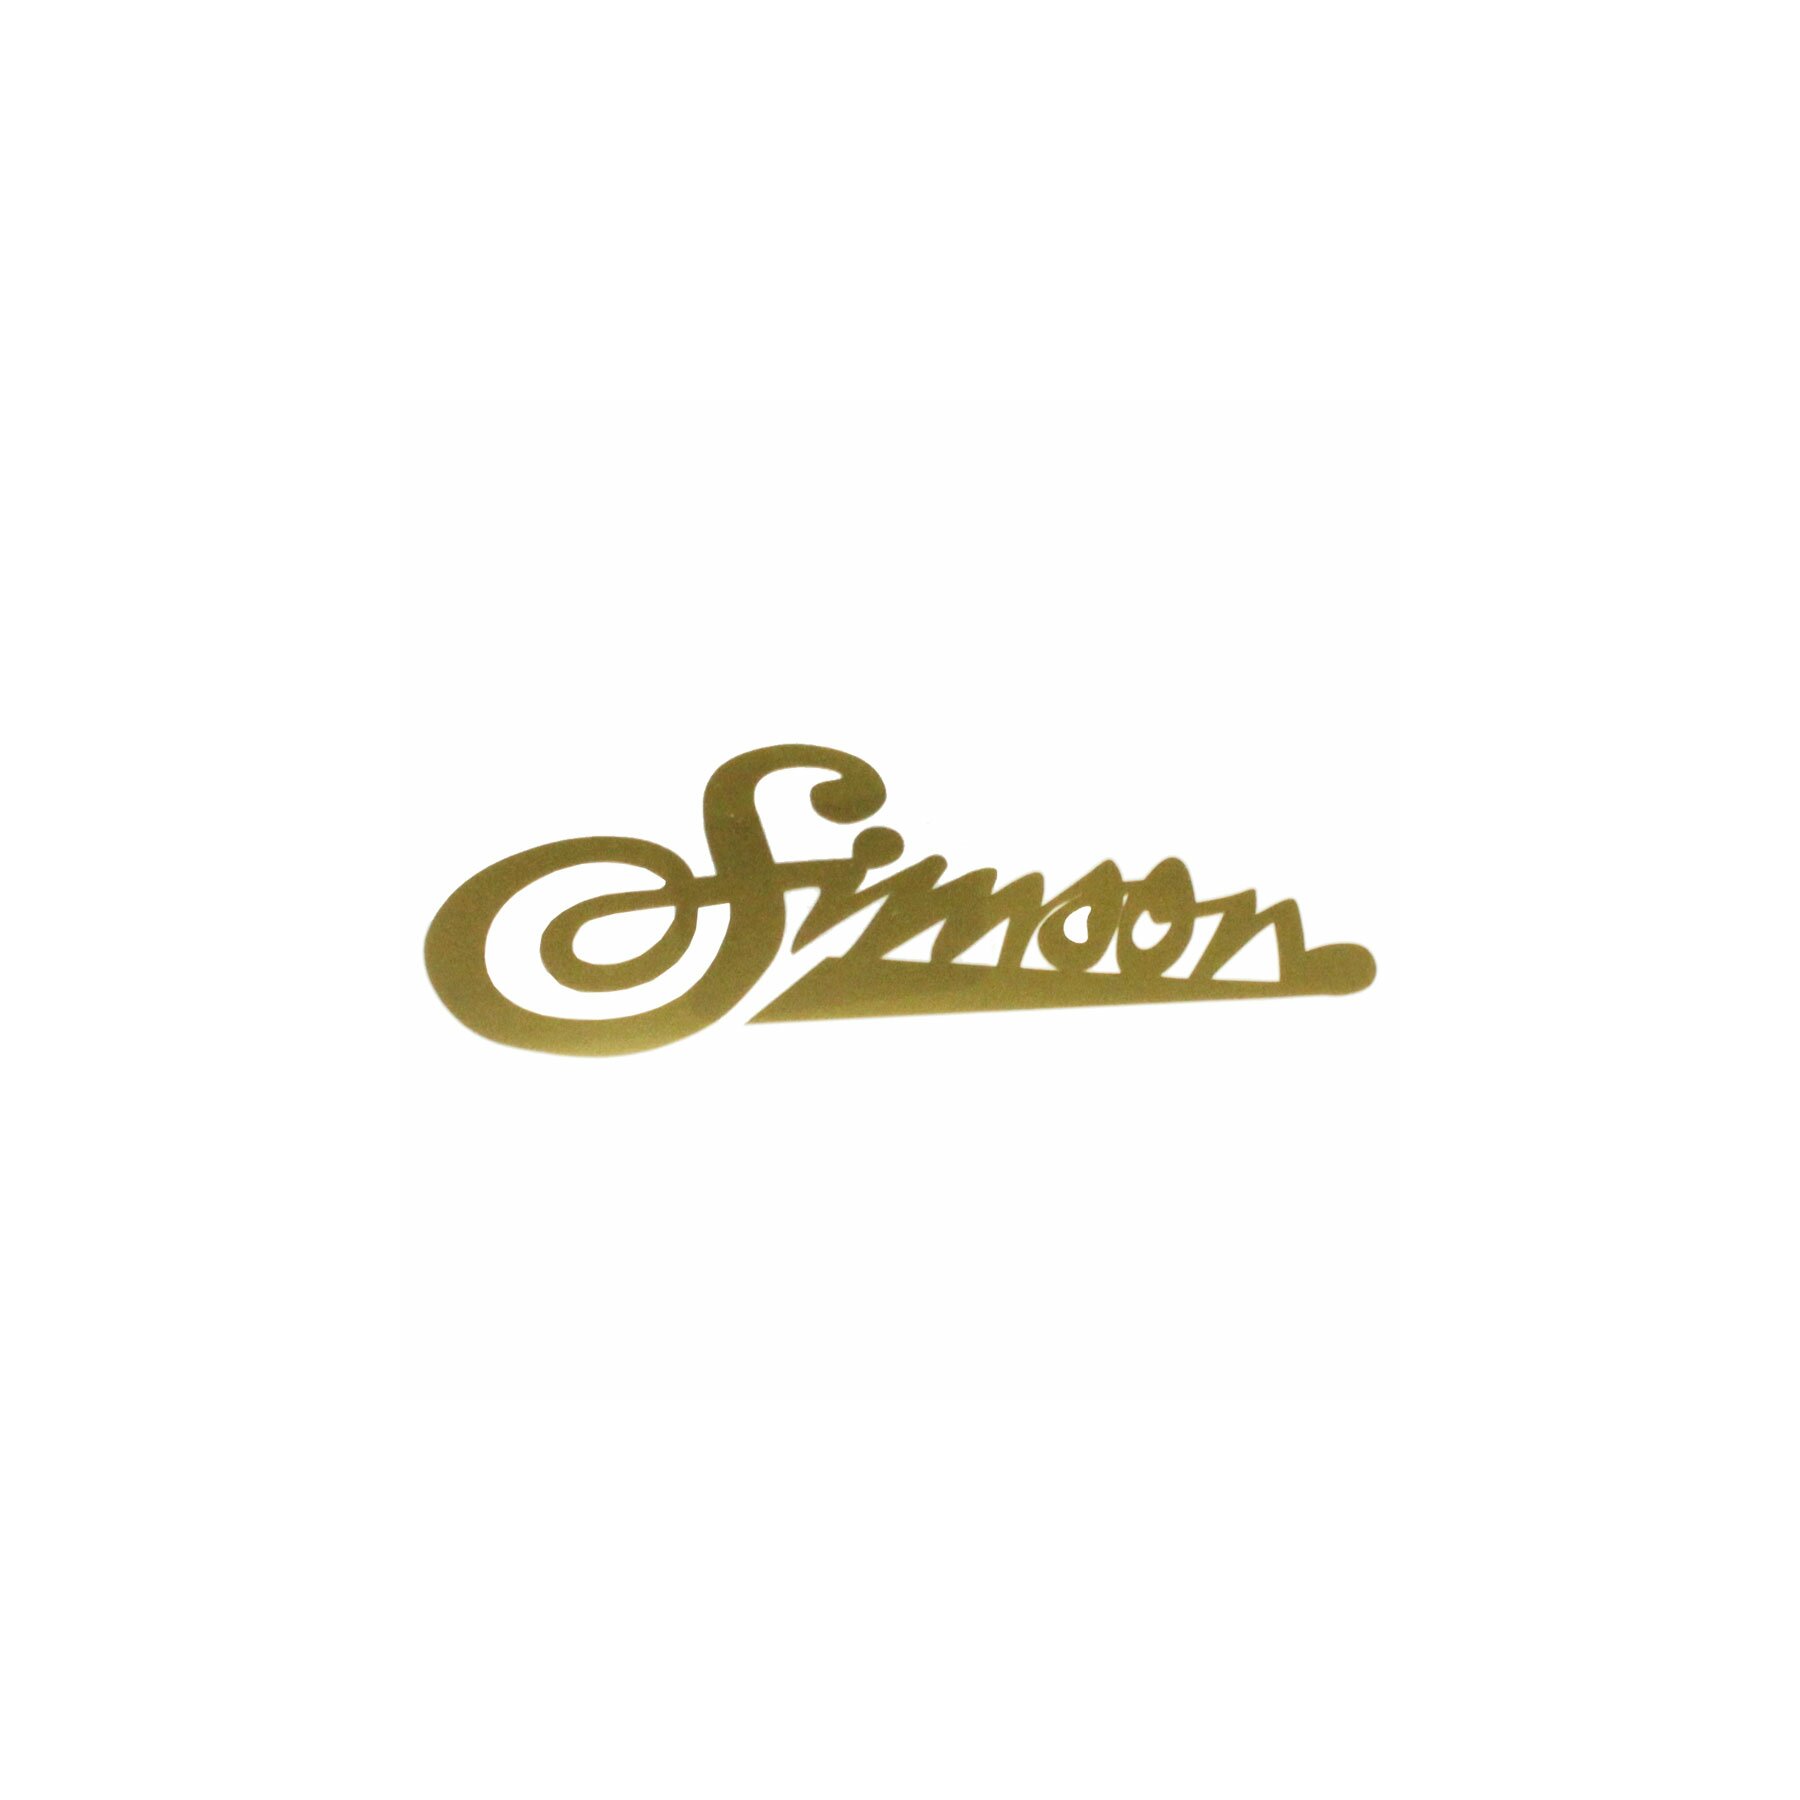 Simson Ersatzteile für Schwalbe, S51 & Co. – Sausewind Shop